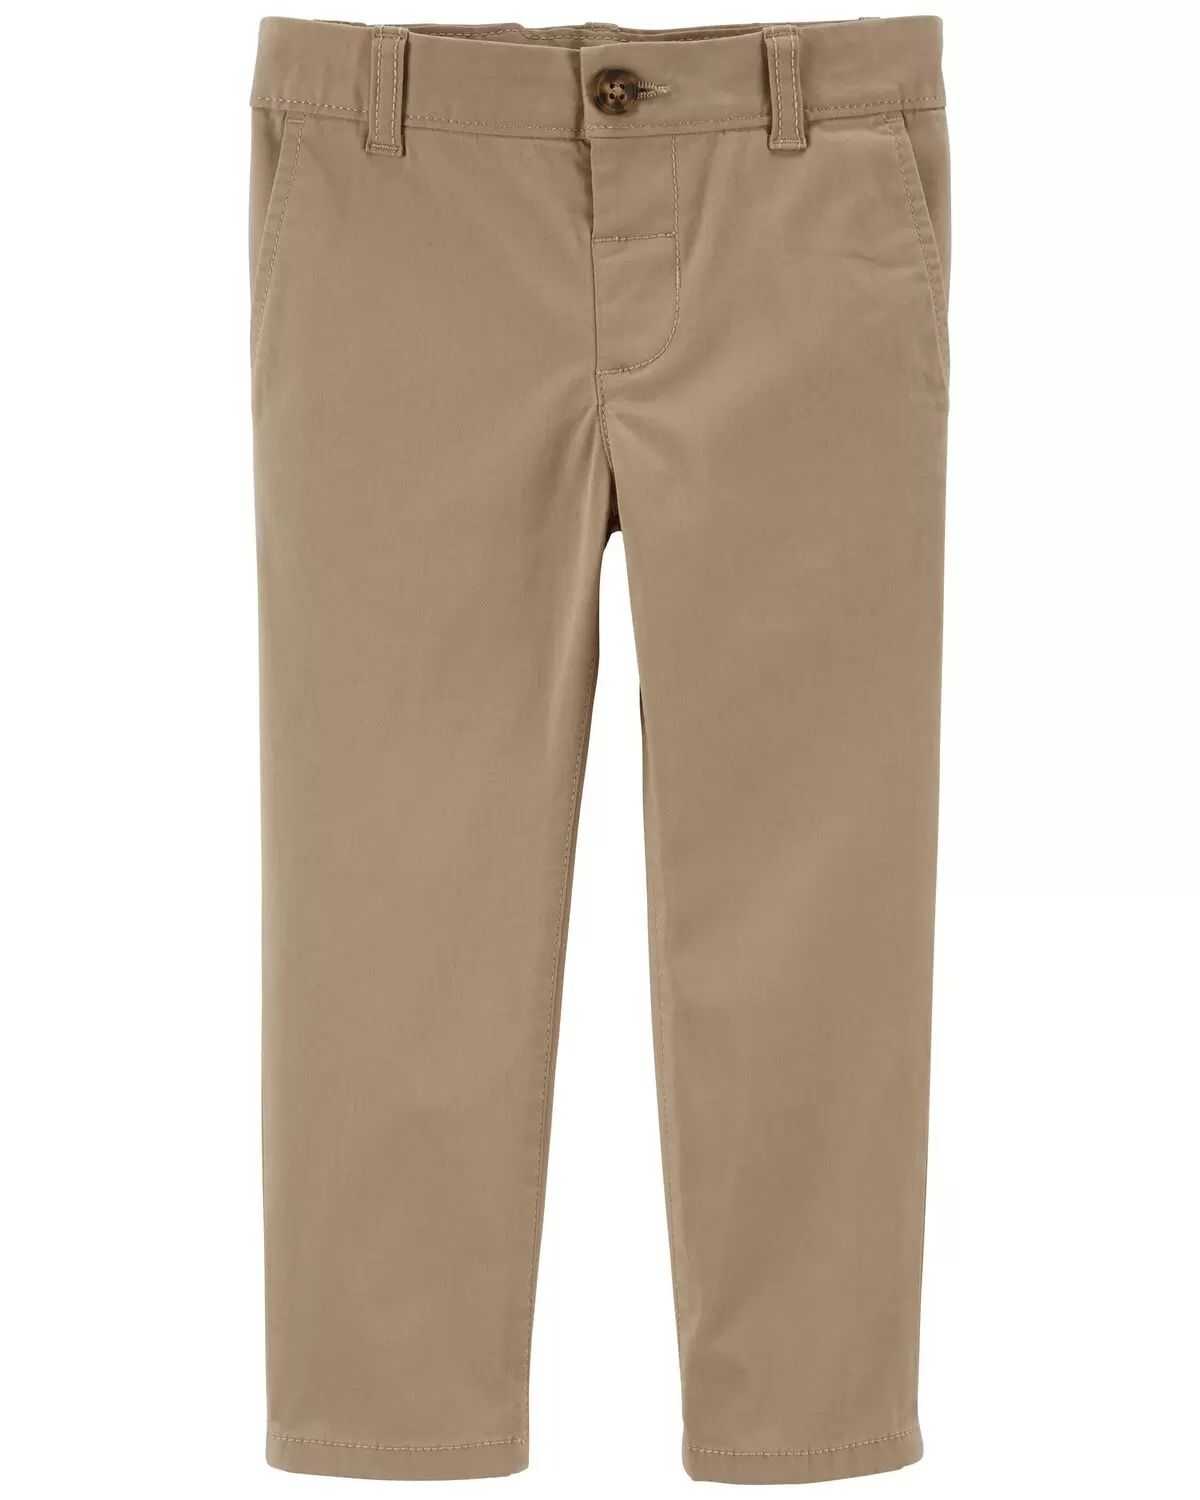 Khaki Baby Flat-Front Pants | carters.com | Carter's